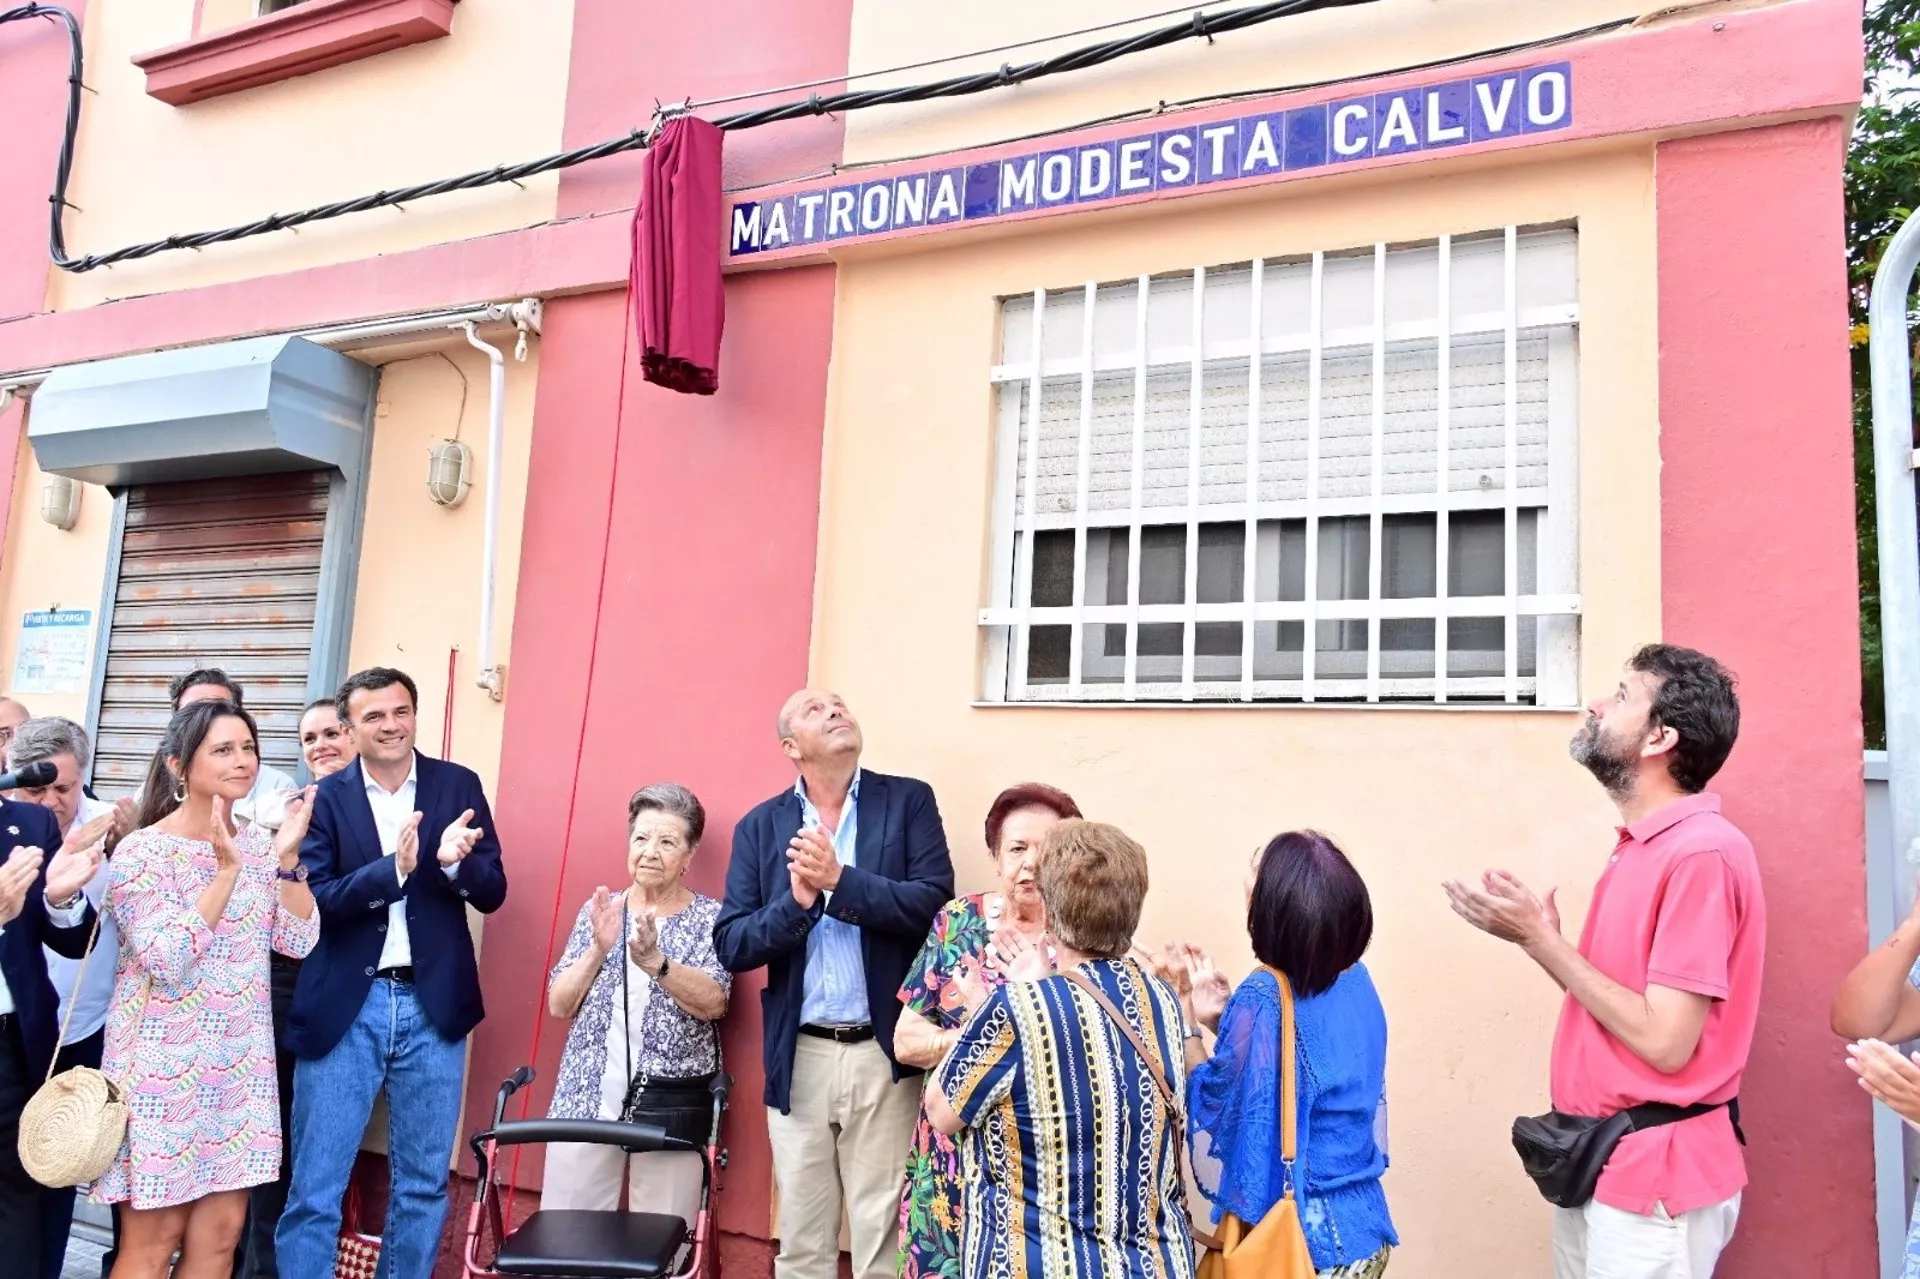 La antigua calle Ejercito de África renombrada como Matrona Modesta Calvo y descubierta el pasado mes de septiembre.